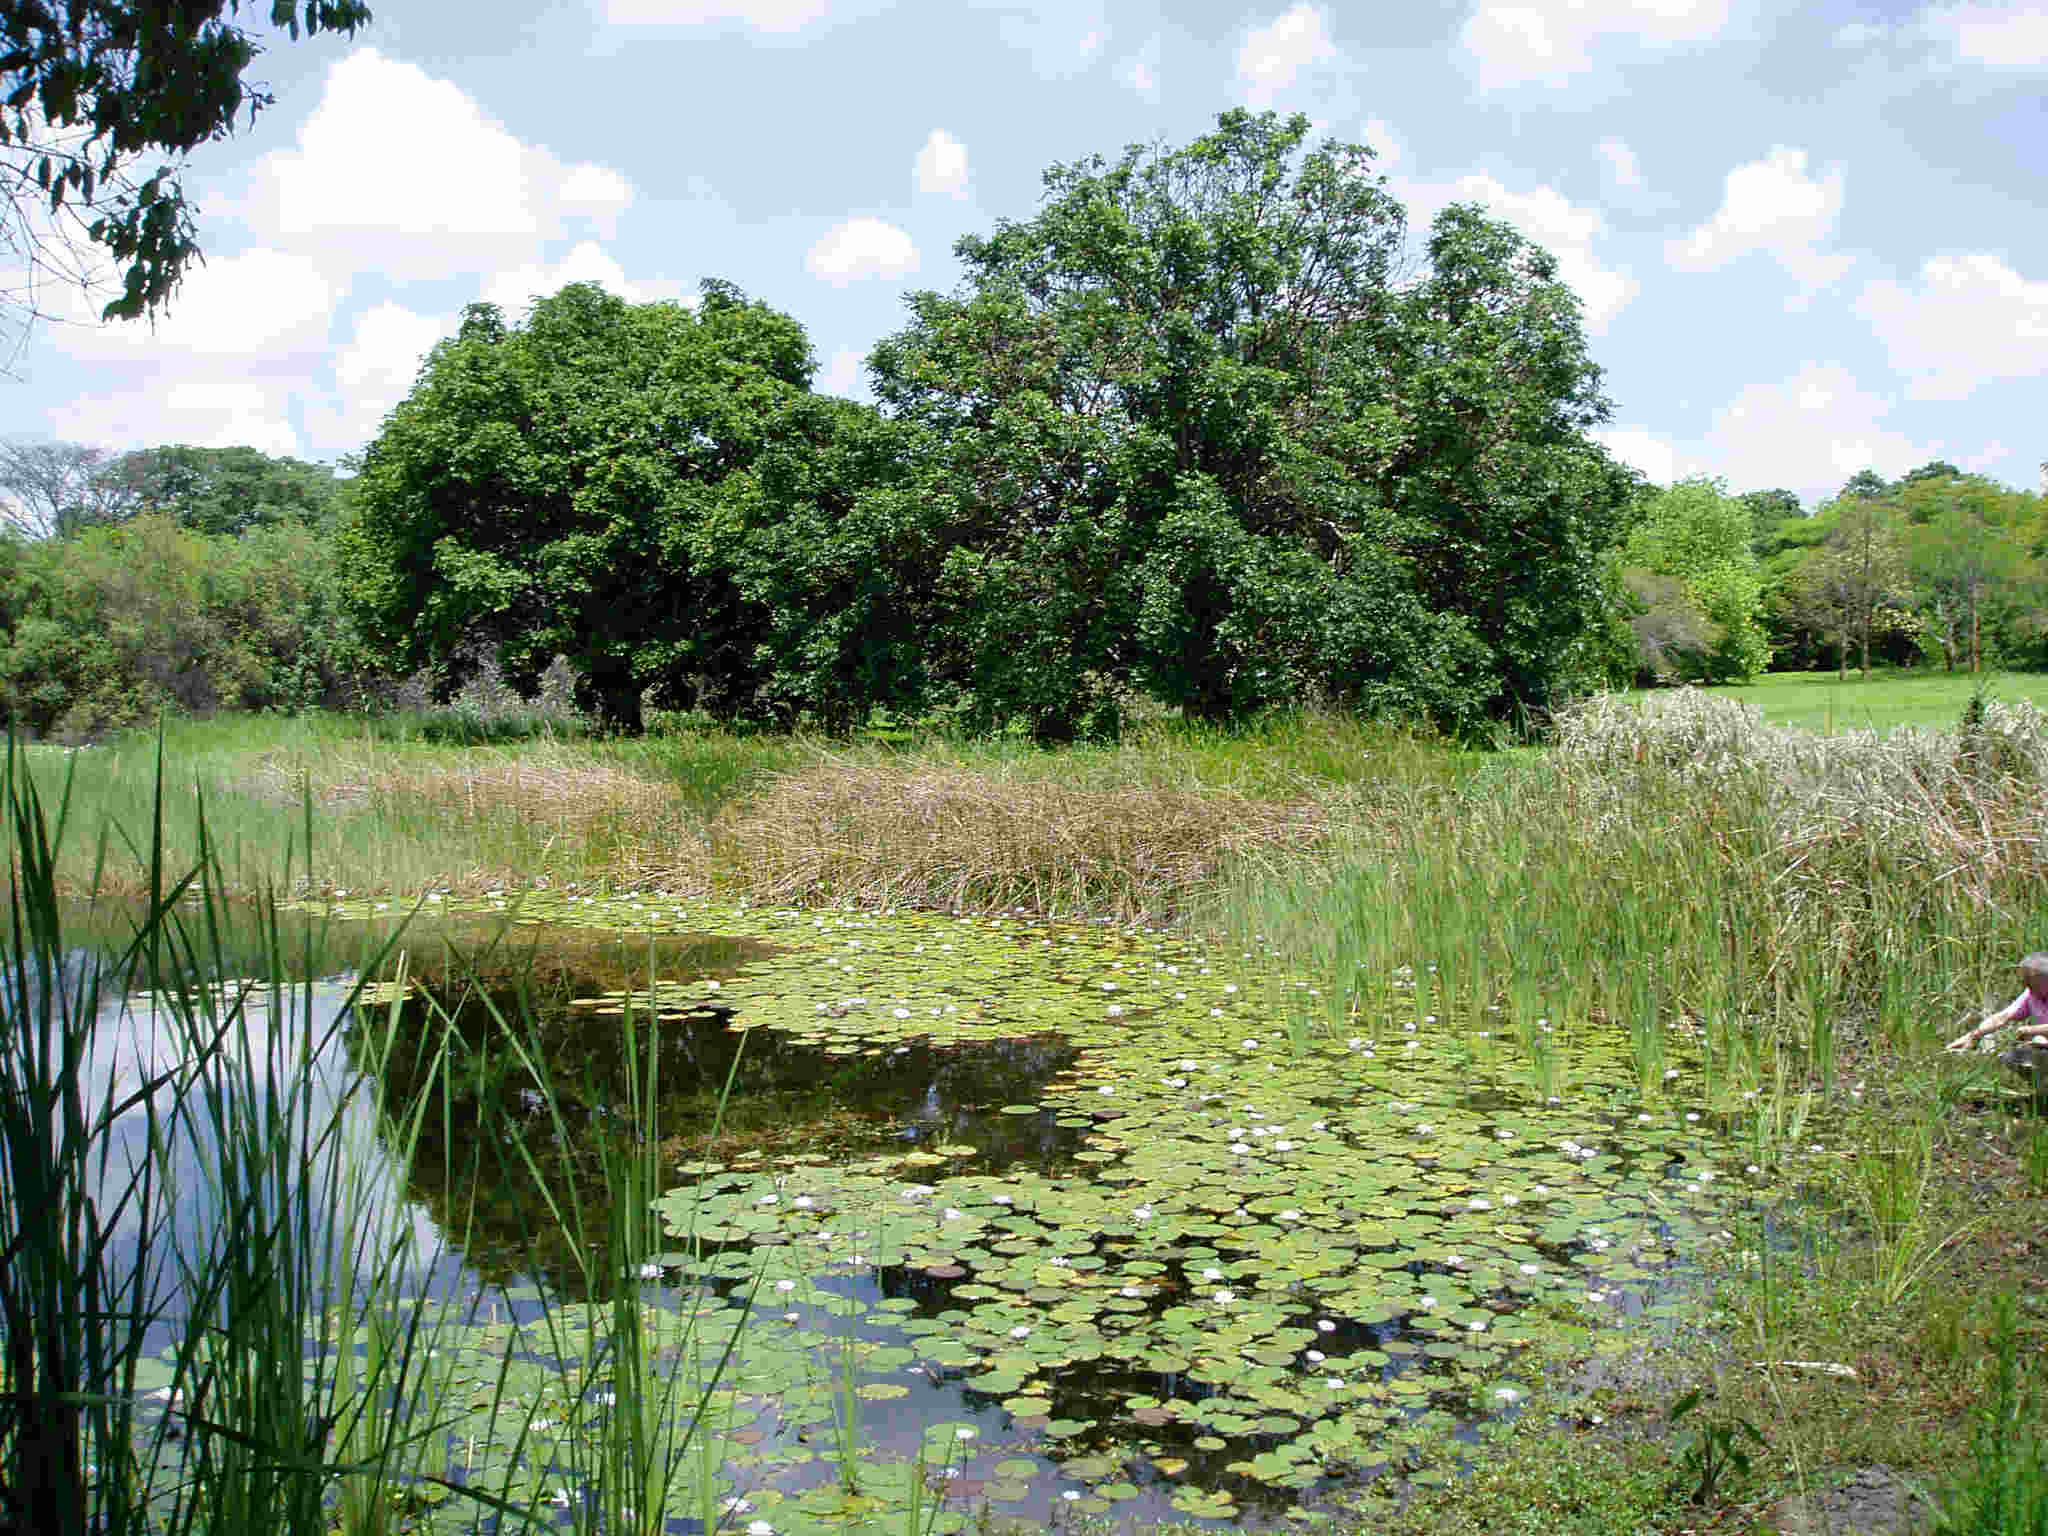 The Botanic Garden lake.